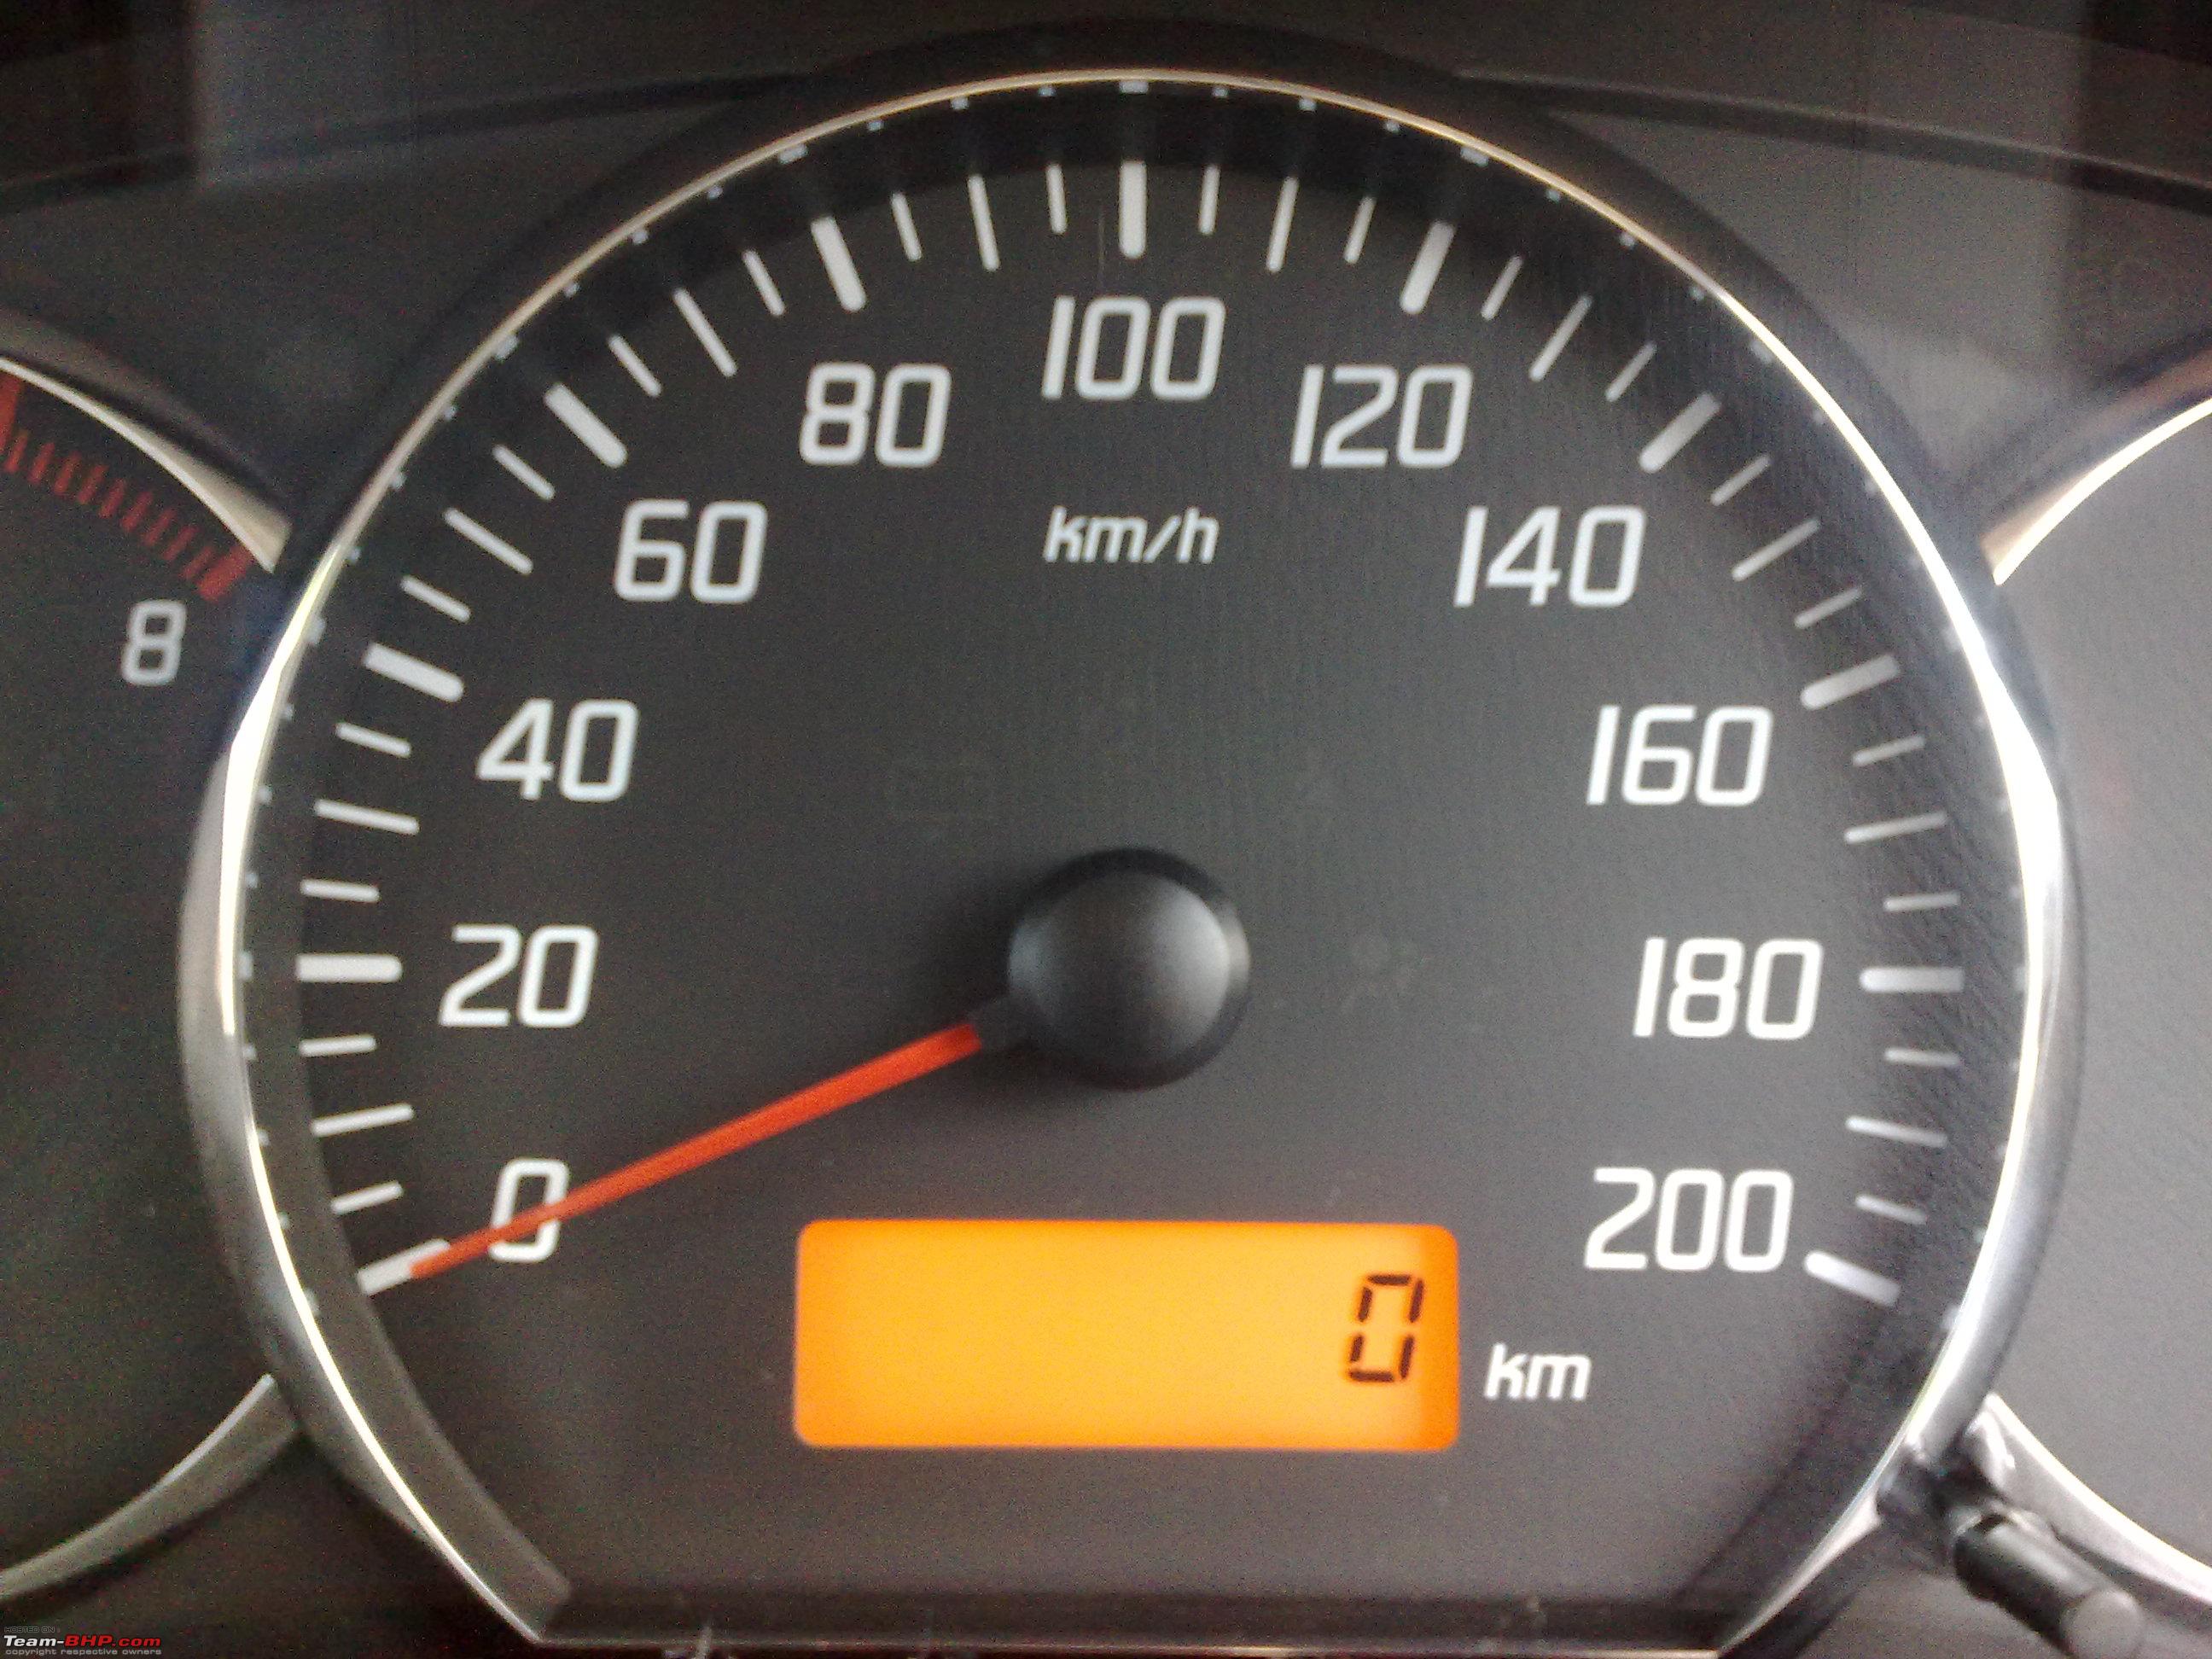 Nissan speedometer reset